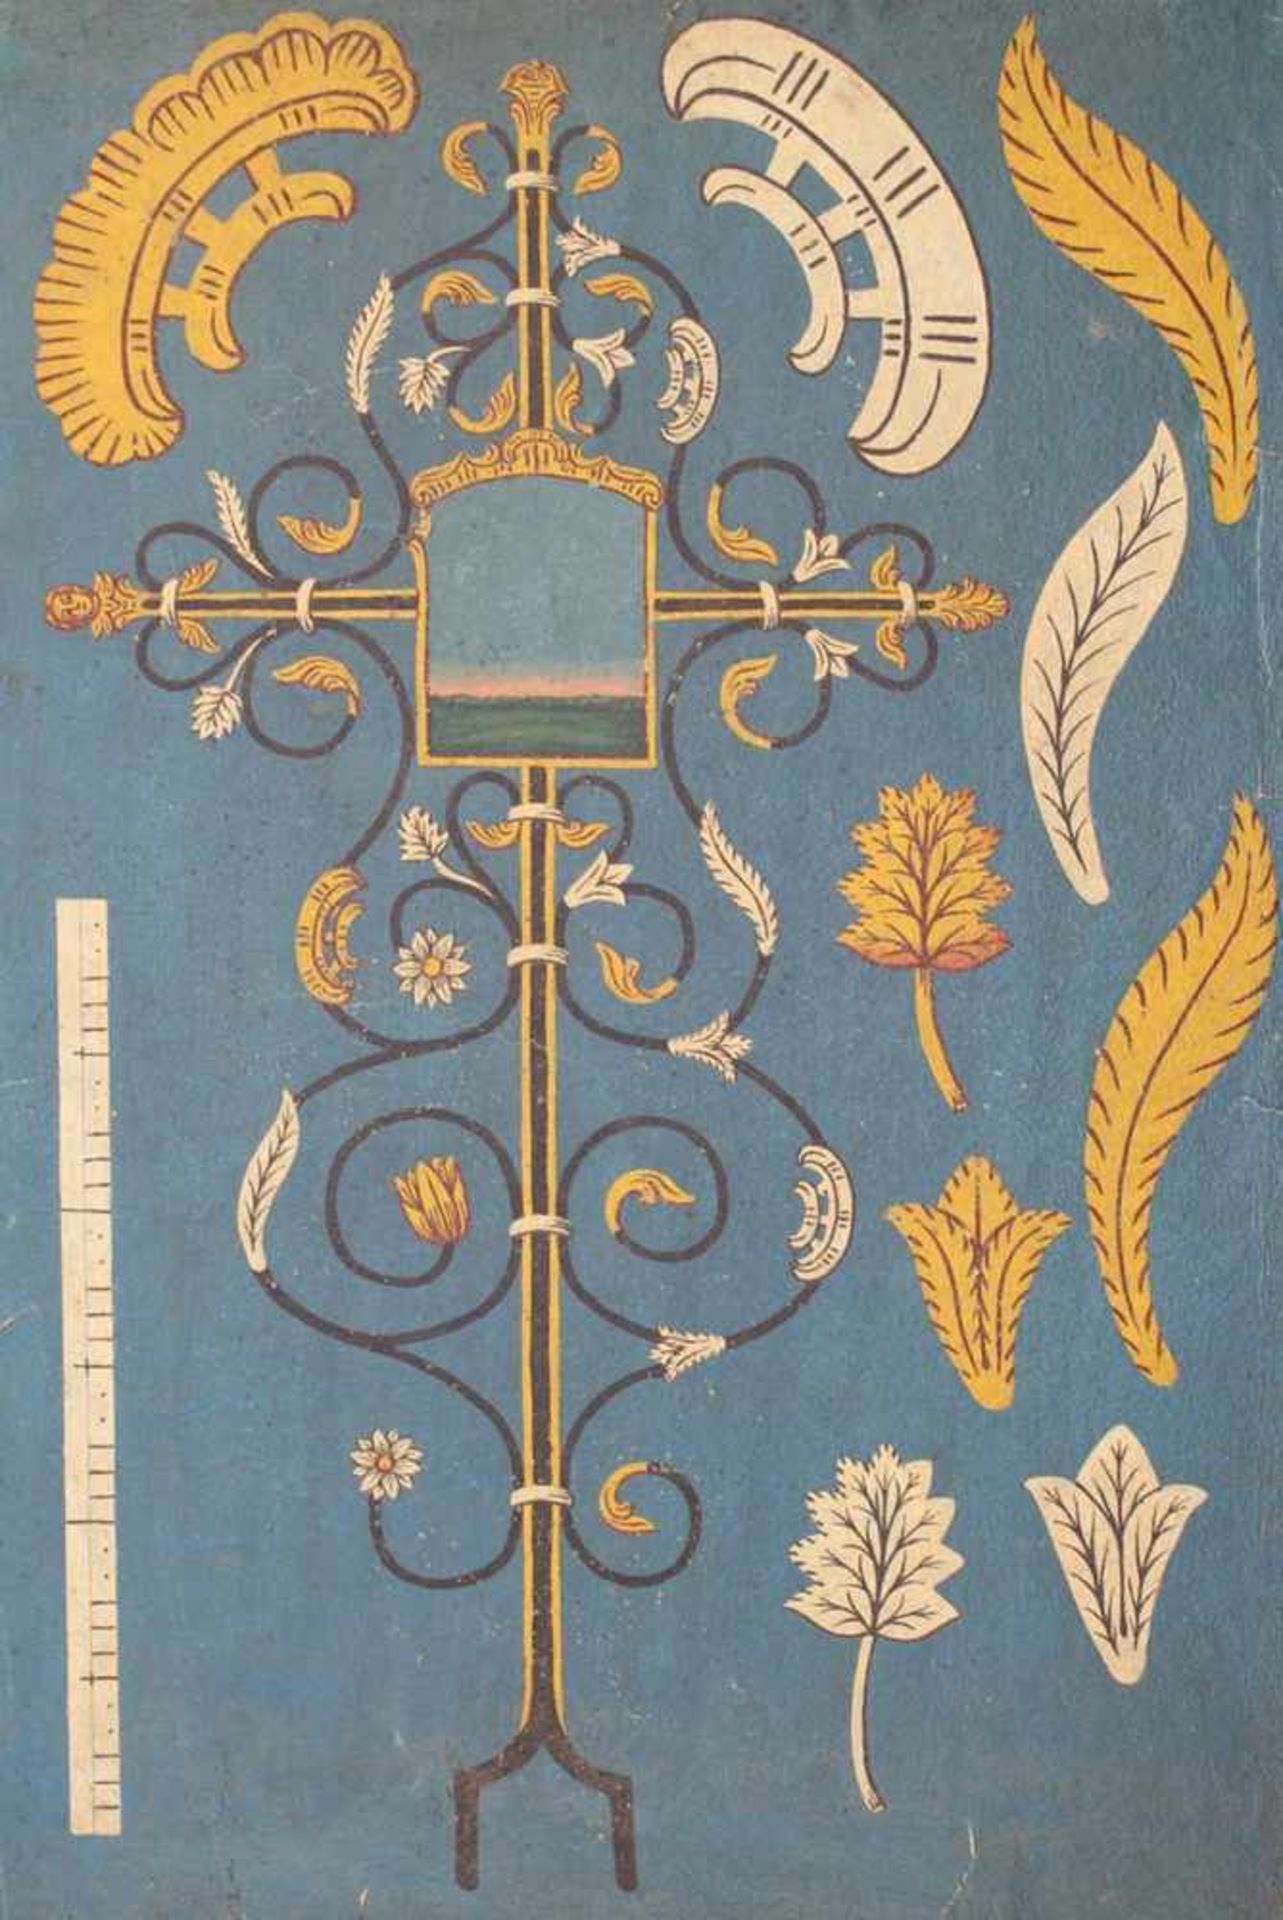 Grabkreuz.Entwurf für ein Grabkreuz mit Blatt- u. Blumenornamenten. Deckfarbenmalerei auf blaue